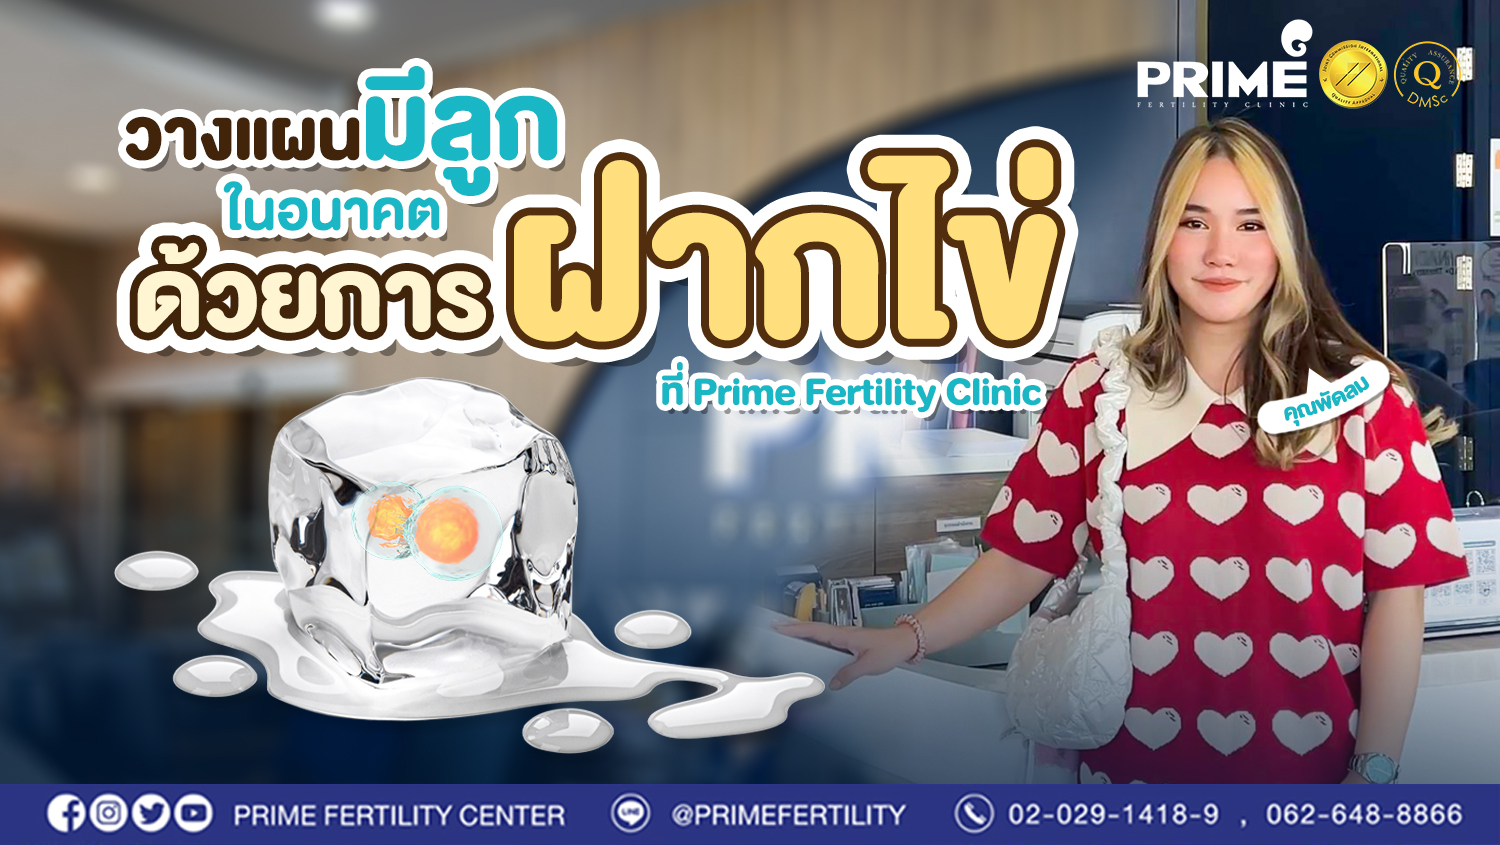 วางแผนมีลูกในอนาคต ด้วยการฝากไข่ ที่ Prime Fertility Clinic